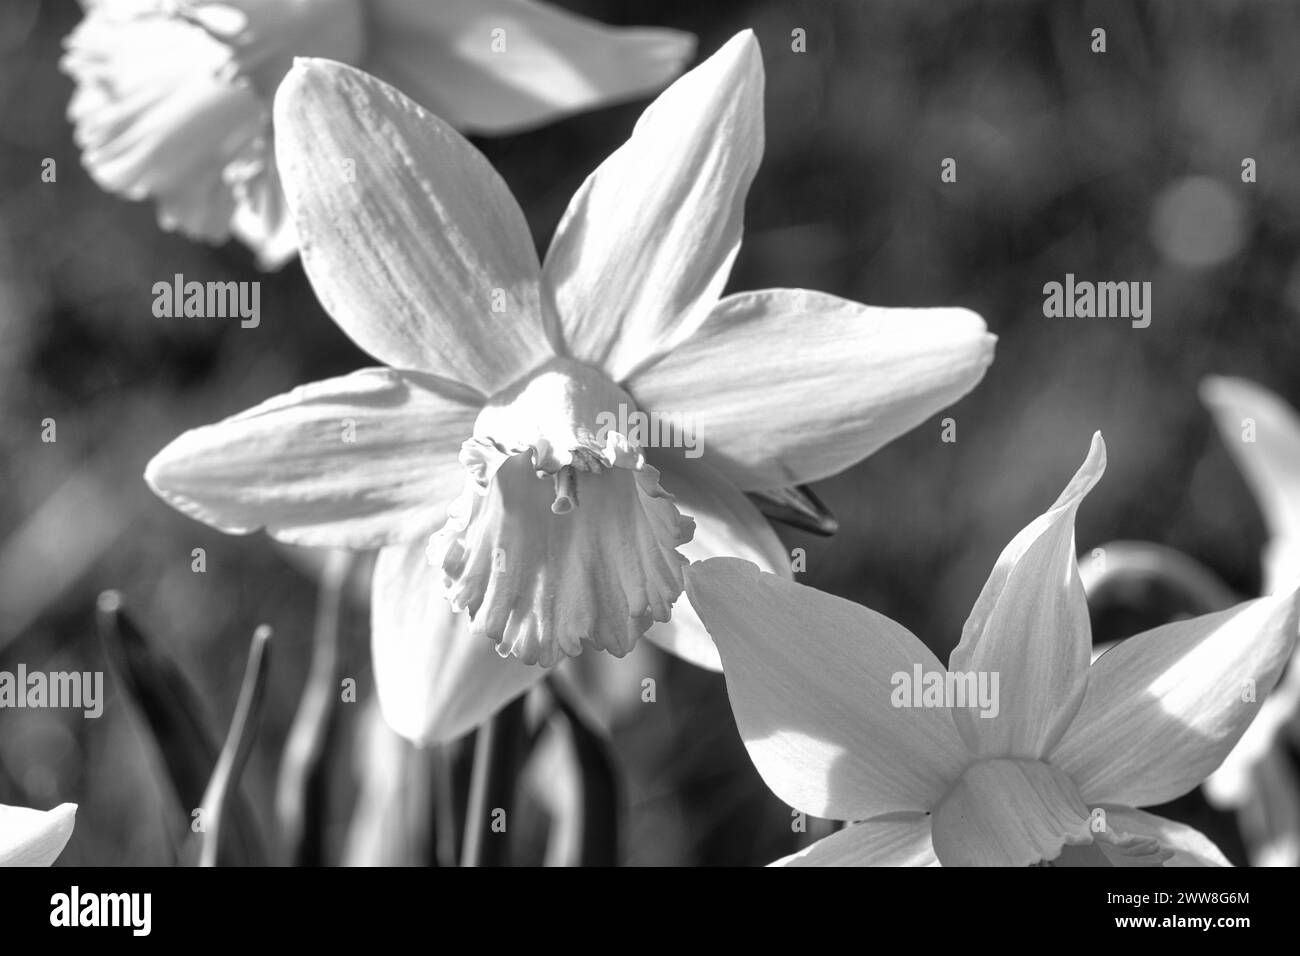 Narzissen auf einer schwarz-weißen Wiese zur Osterzeit. Blumen leuchten. Frühe Blüten, die die Ankunft des Frühlings ankündigen. Pflanzen fotographieren Stockfoto